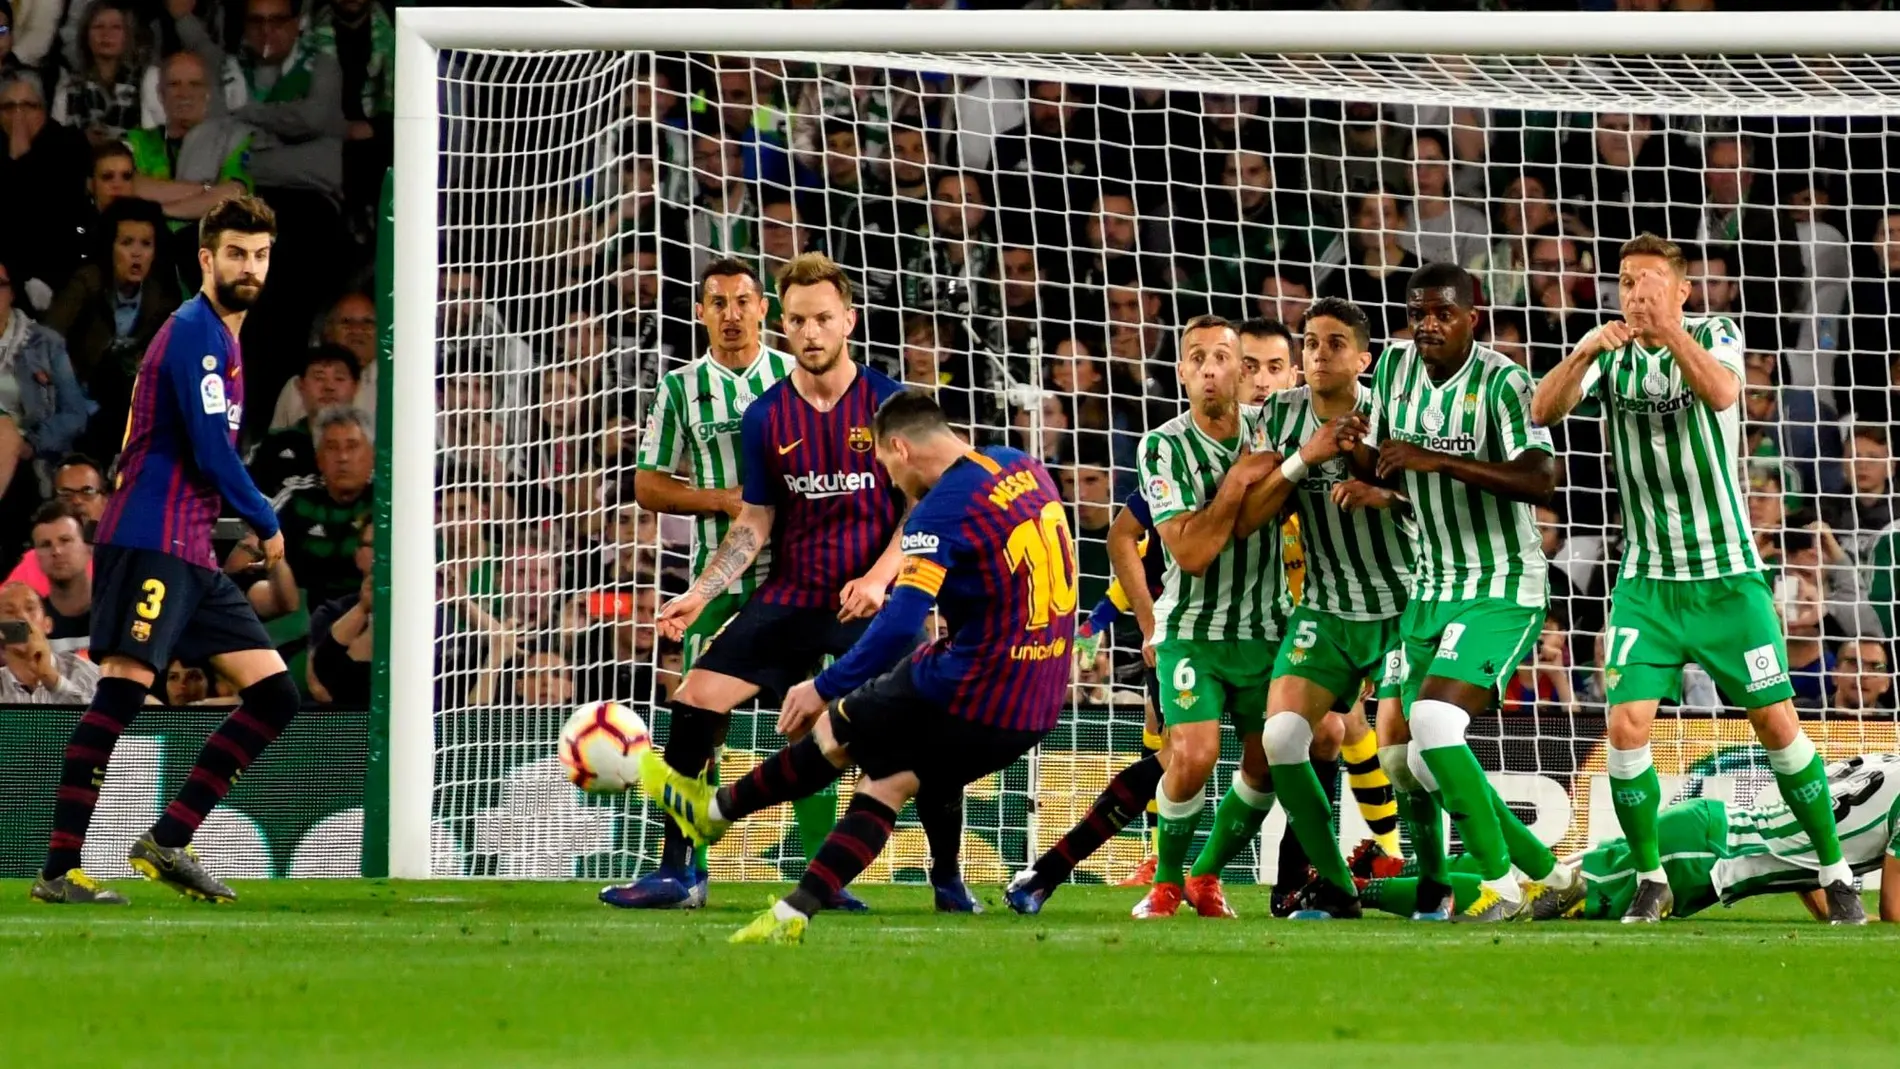 Los secretos de las faltas de Messi: doble efecto, cuerpo inclinado, mirada al balón...